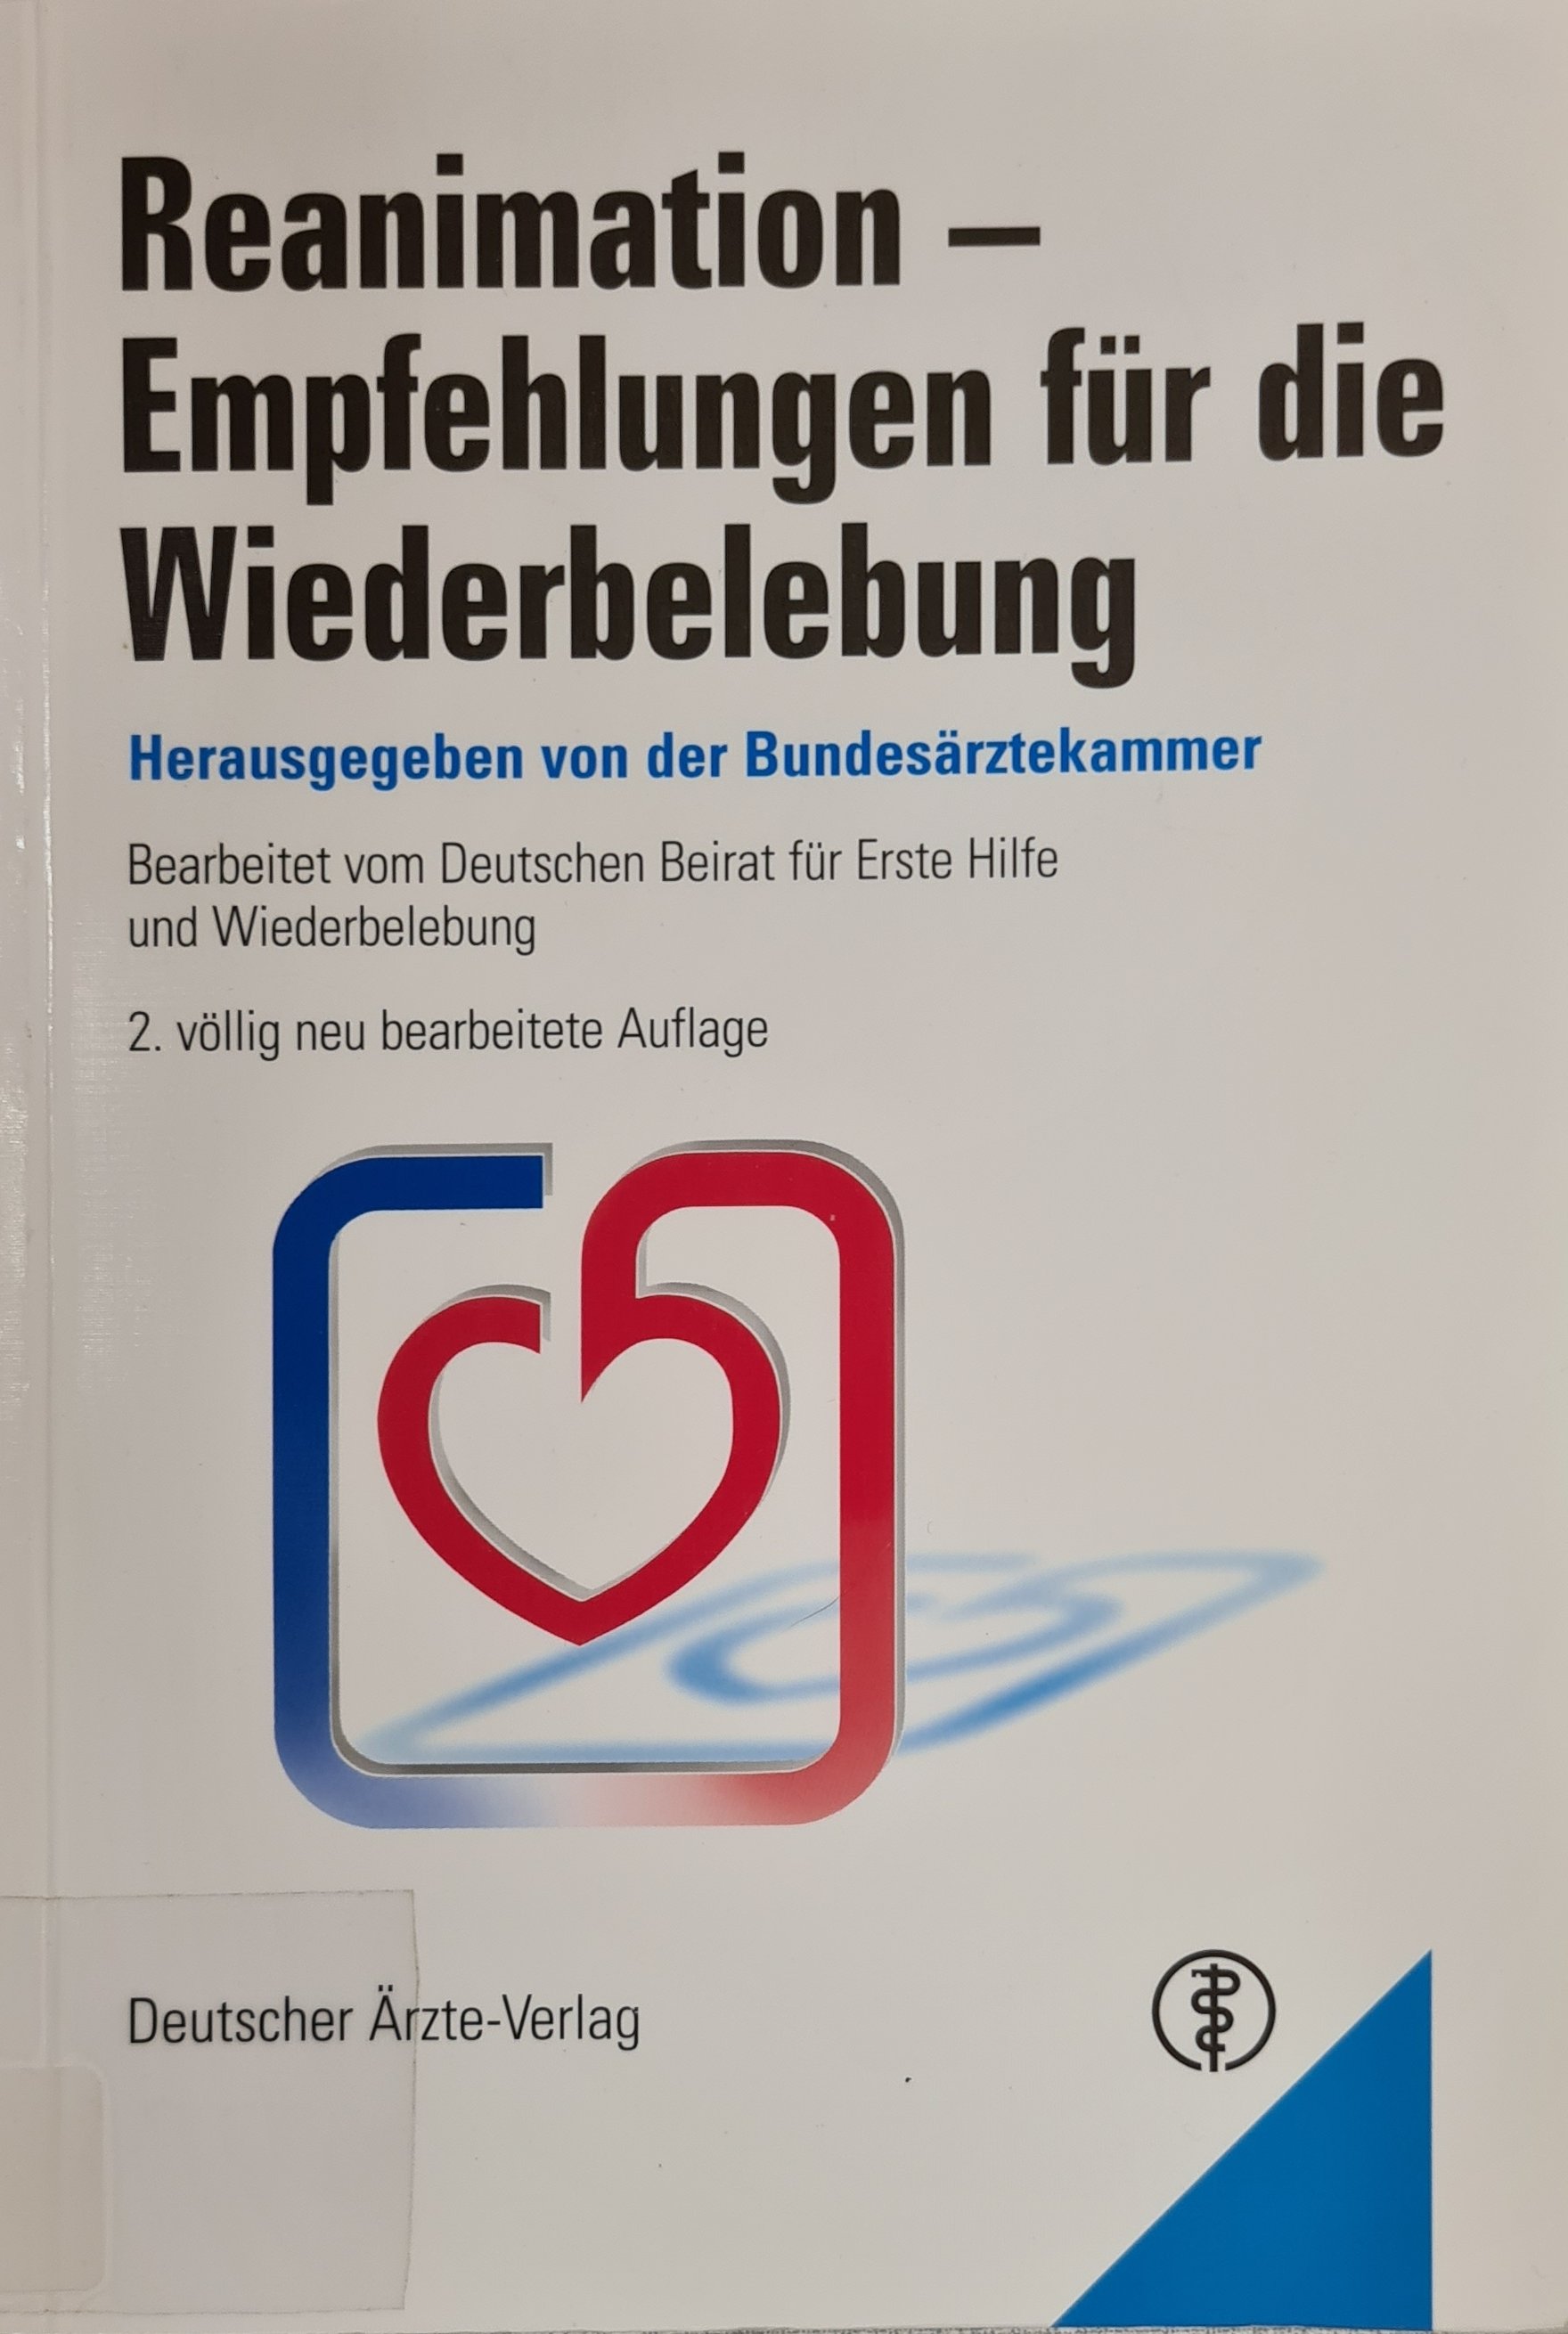 Reanimation – Empfehlungen für die Wiederbelebung (Krankenhausmuseum Bielefeld e.V. CC BY-NC-SA)